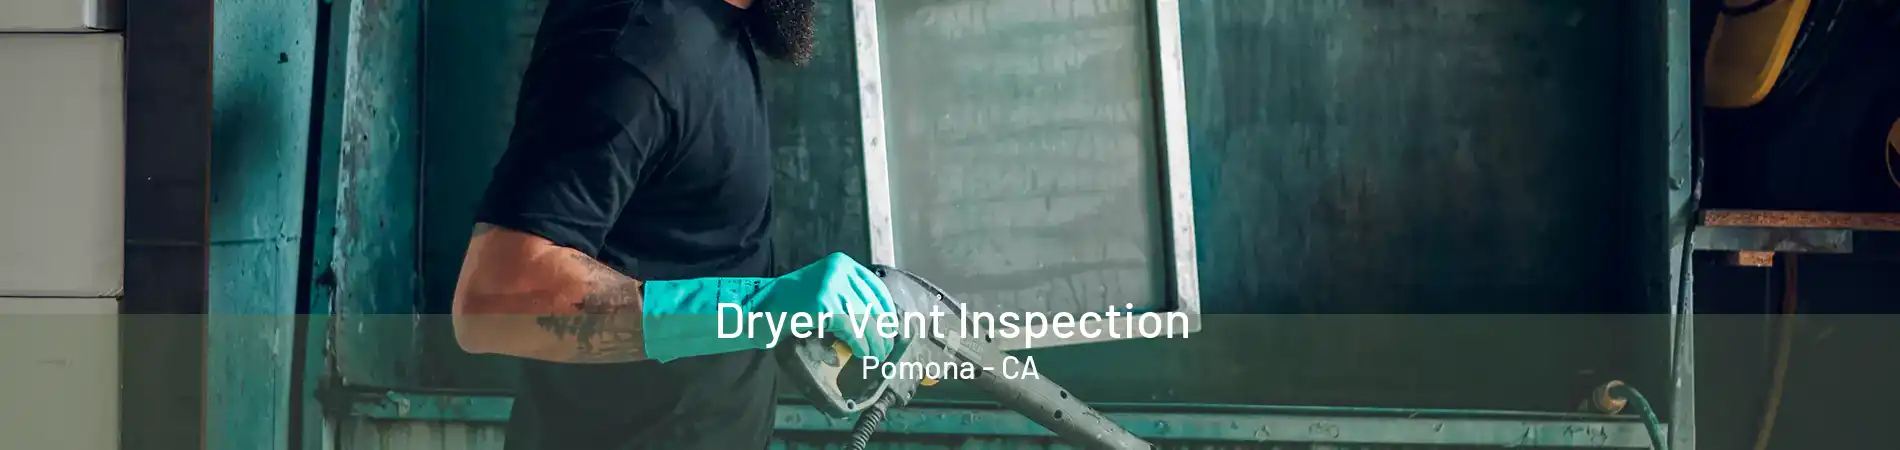 Dryer Vent Inspection Pomona - CA